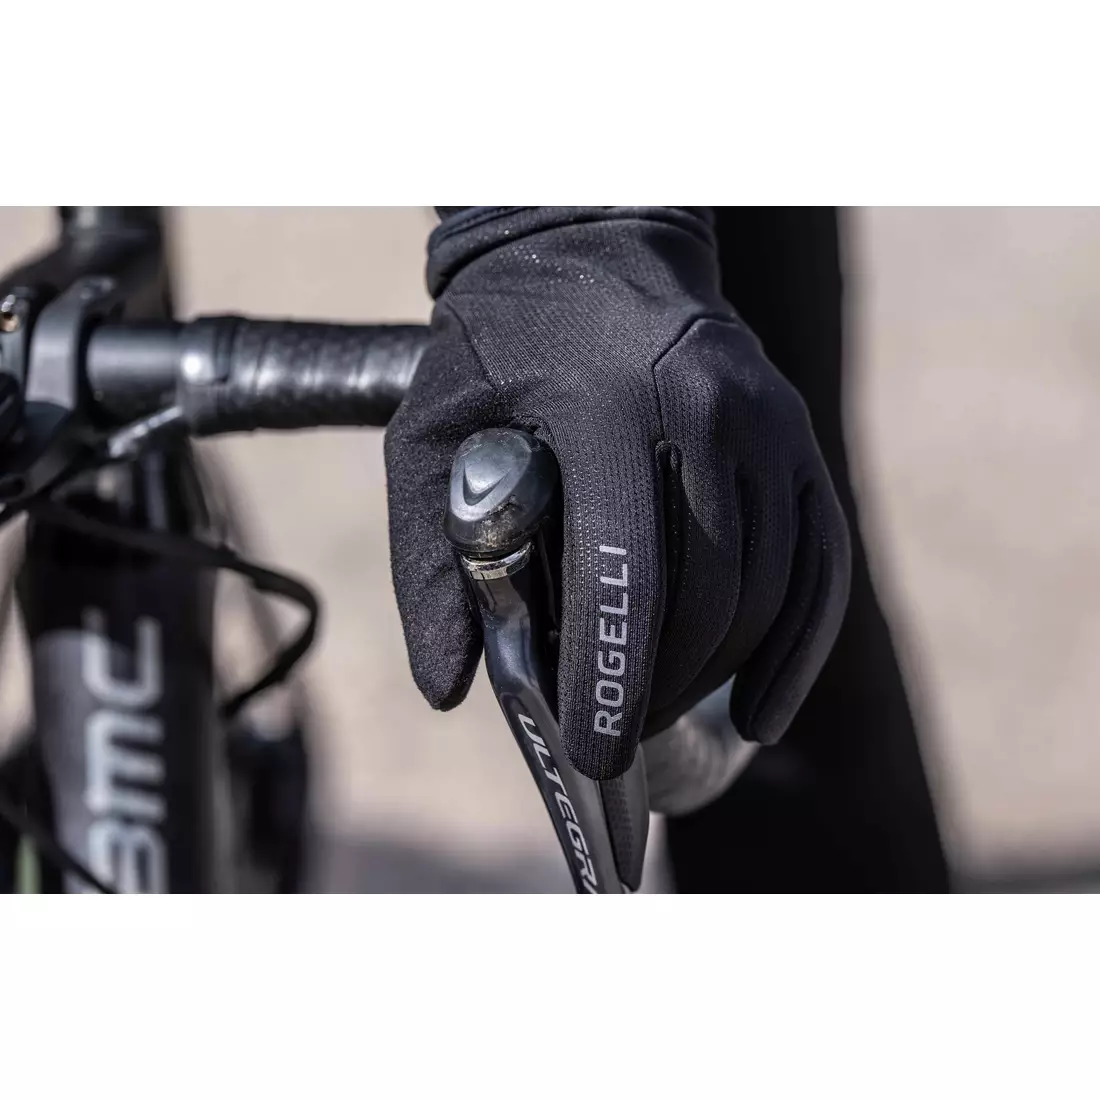 Mănuși de iarnă pentru ciclism Rogelli NIMBUS, negre